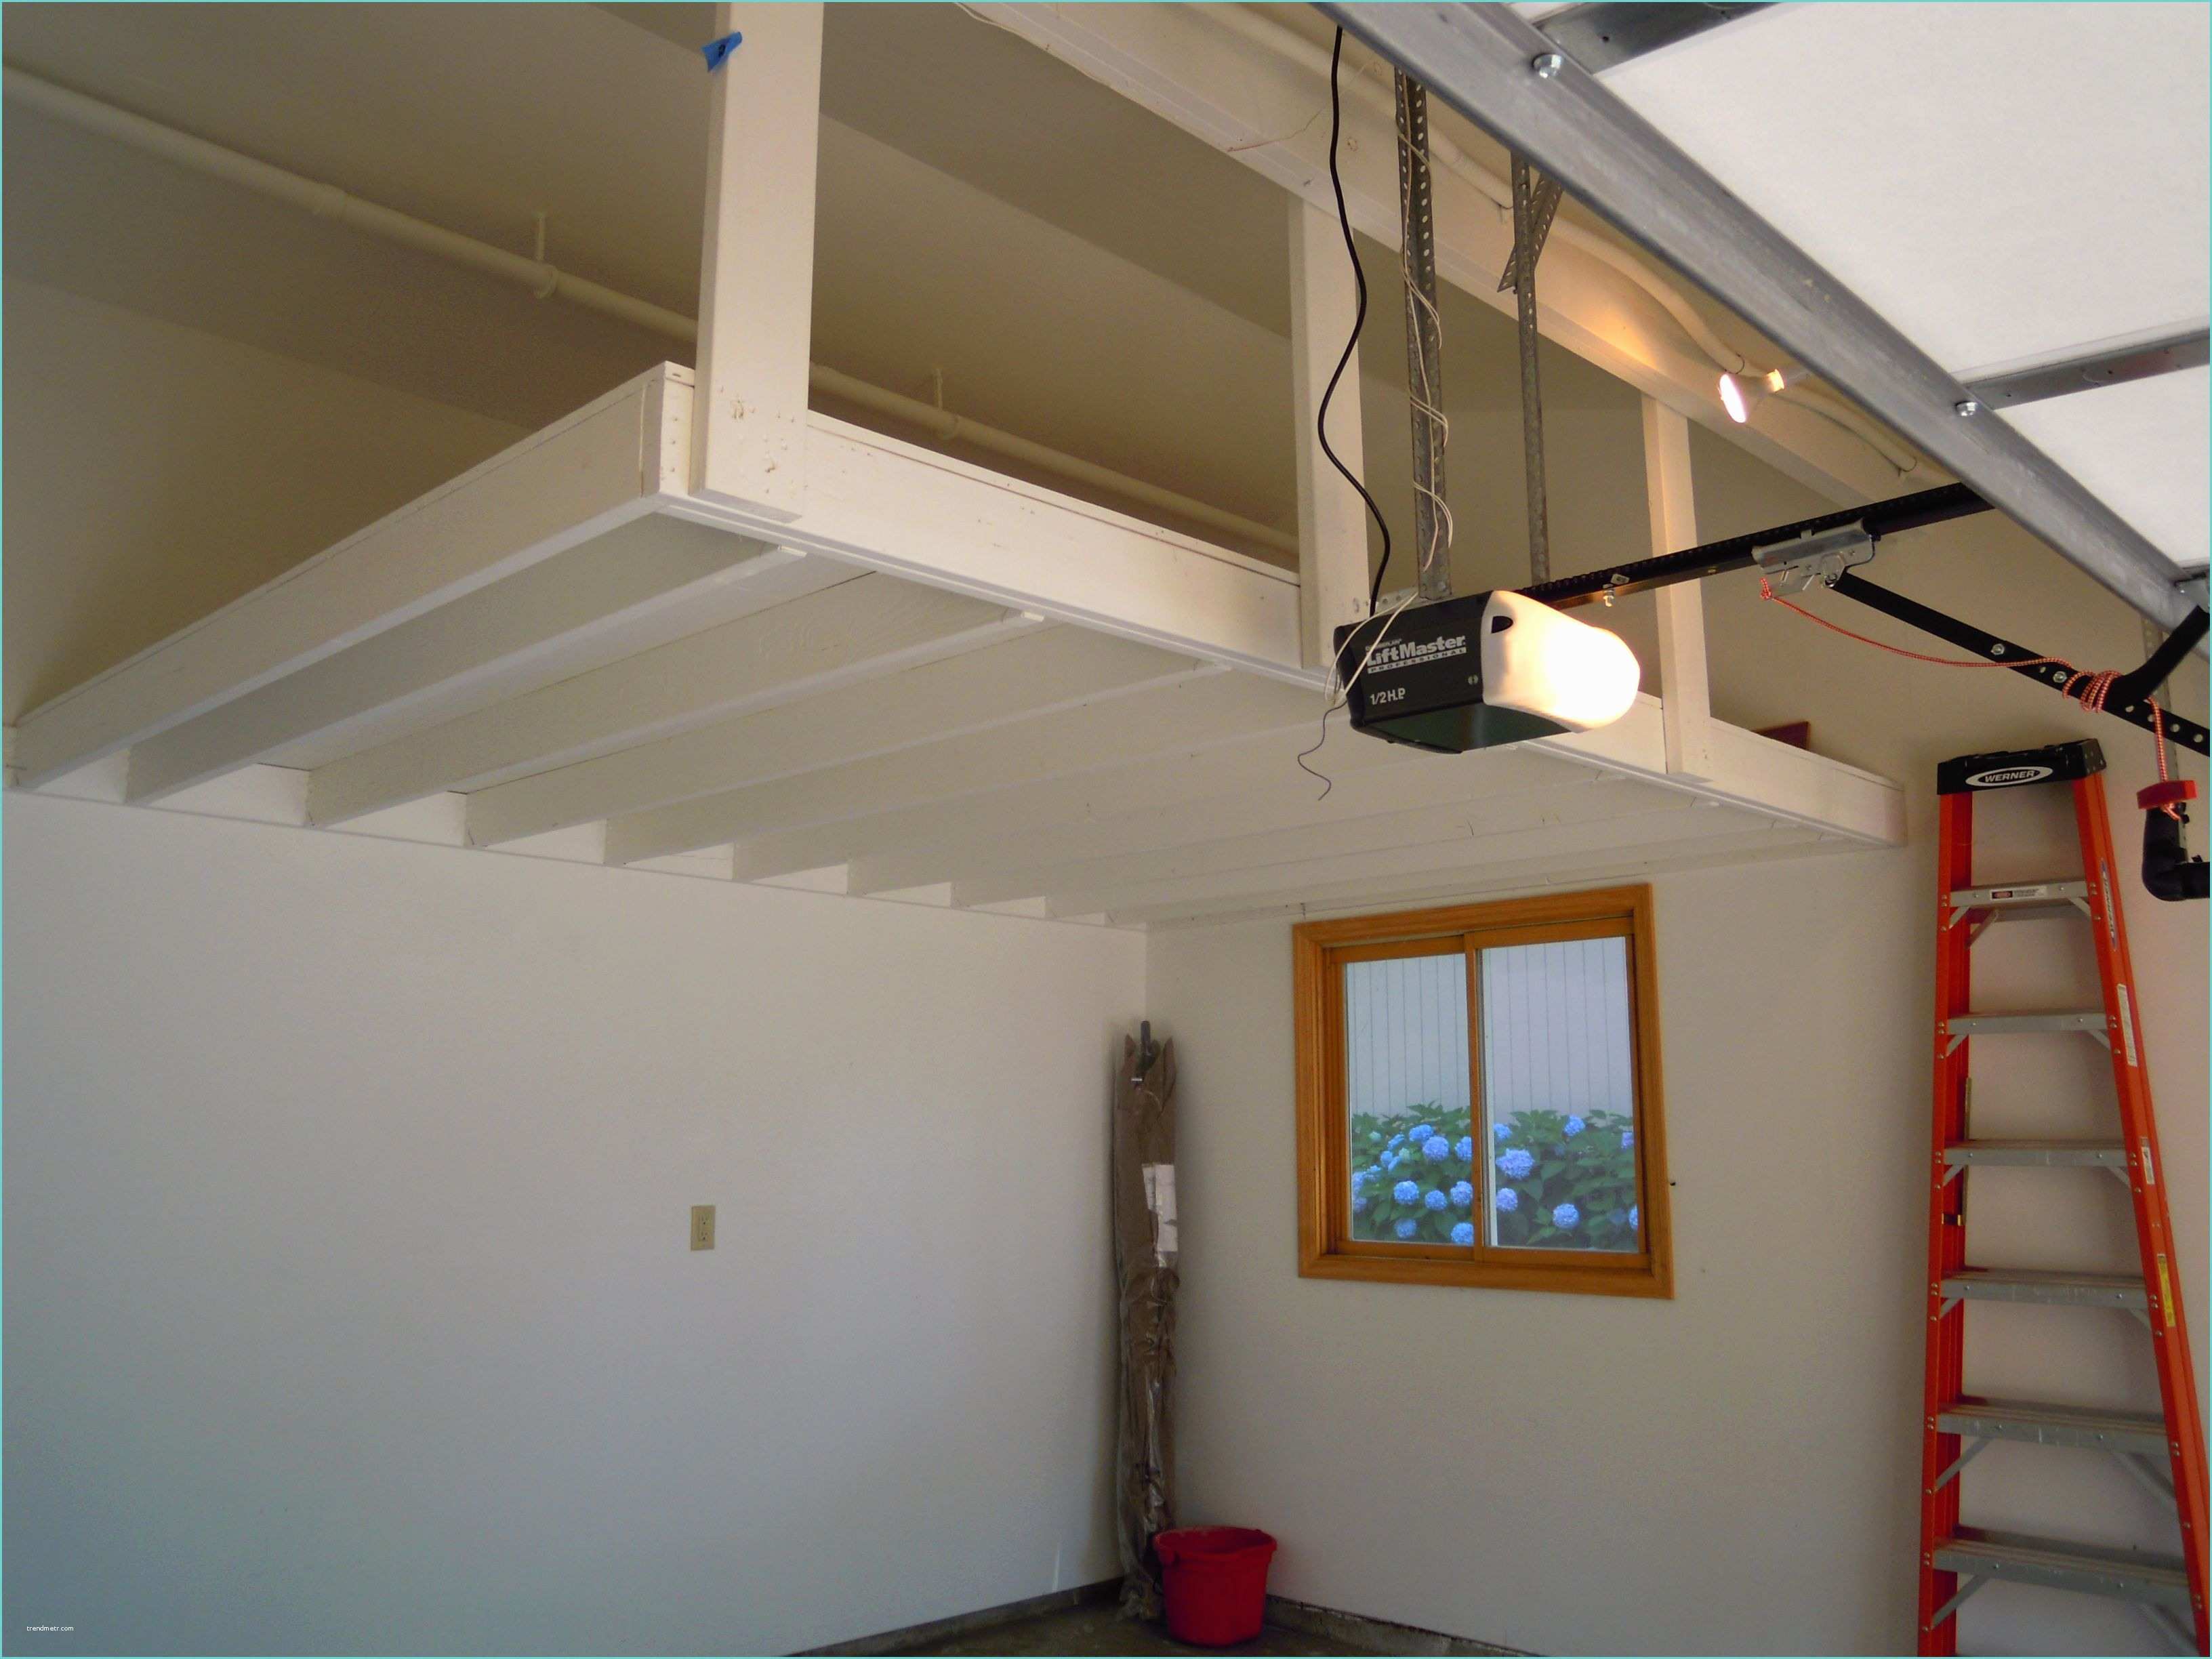 Garage Mezzanine Ideas 16 Unique Loft Garage Home Building Plans